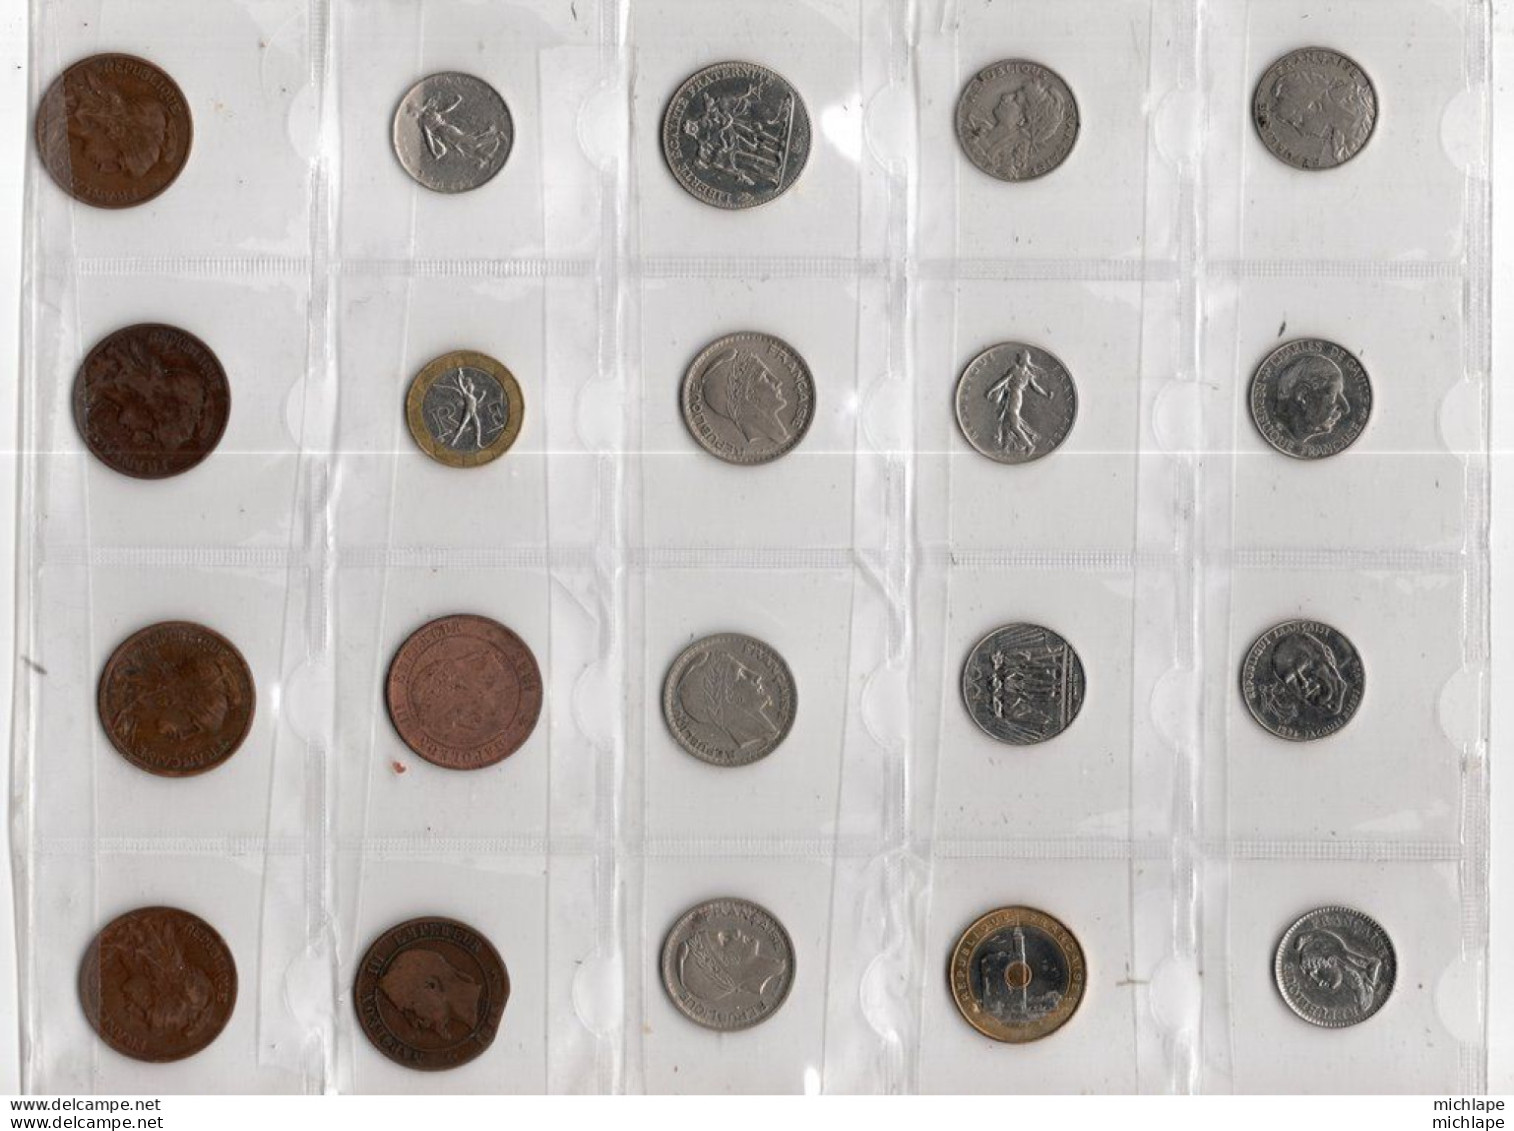 Lot De 20 Pièces De Monnaies Française De 1865 A 1999  - Années Toutes Différentes  ​​​​​​​de 1865 A 1899 - Lots & Kiloware - Coins